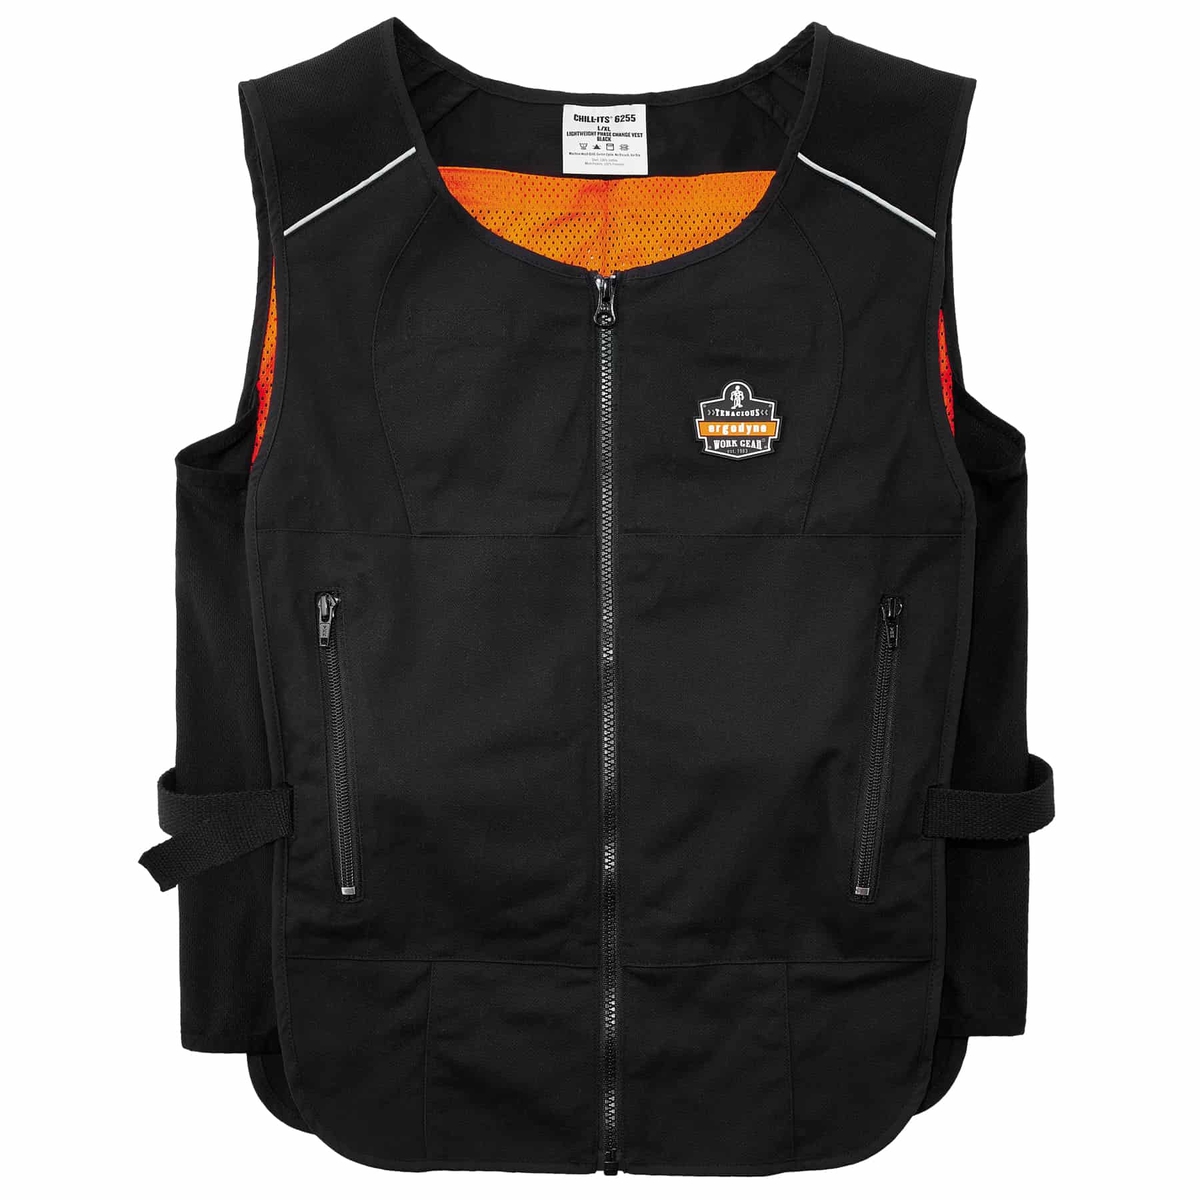 Ergodyne Large - X-Large Black Chill-Its® 6260 Phase Change Cooling Vest